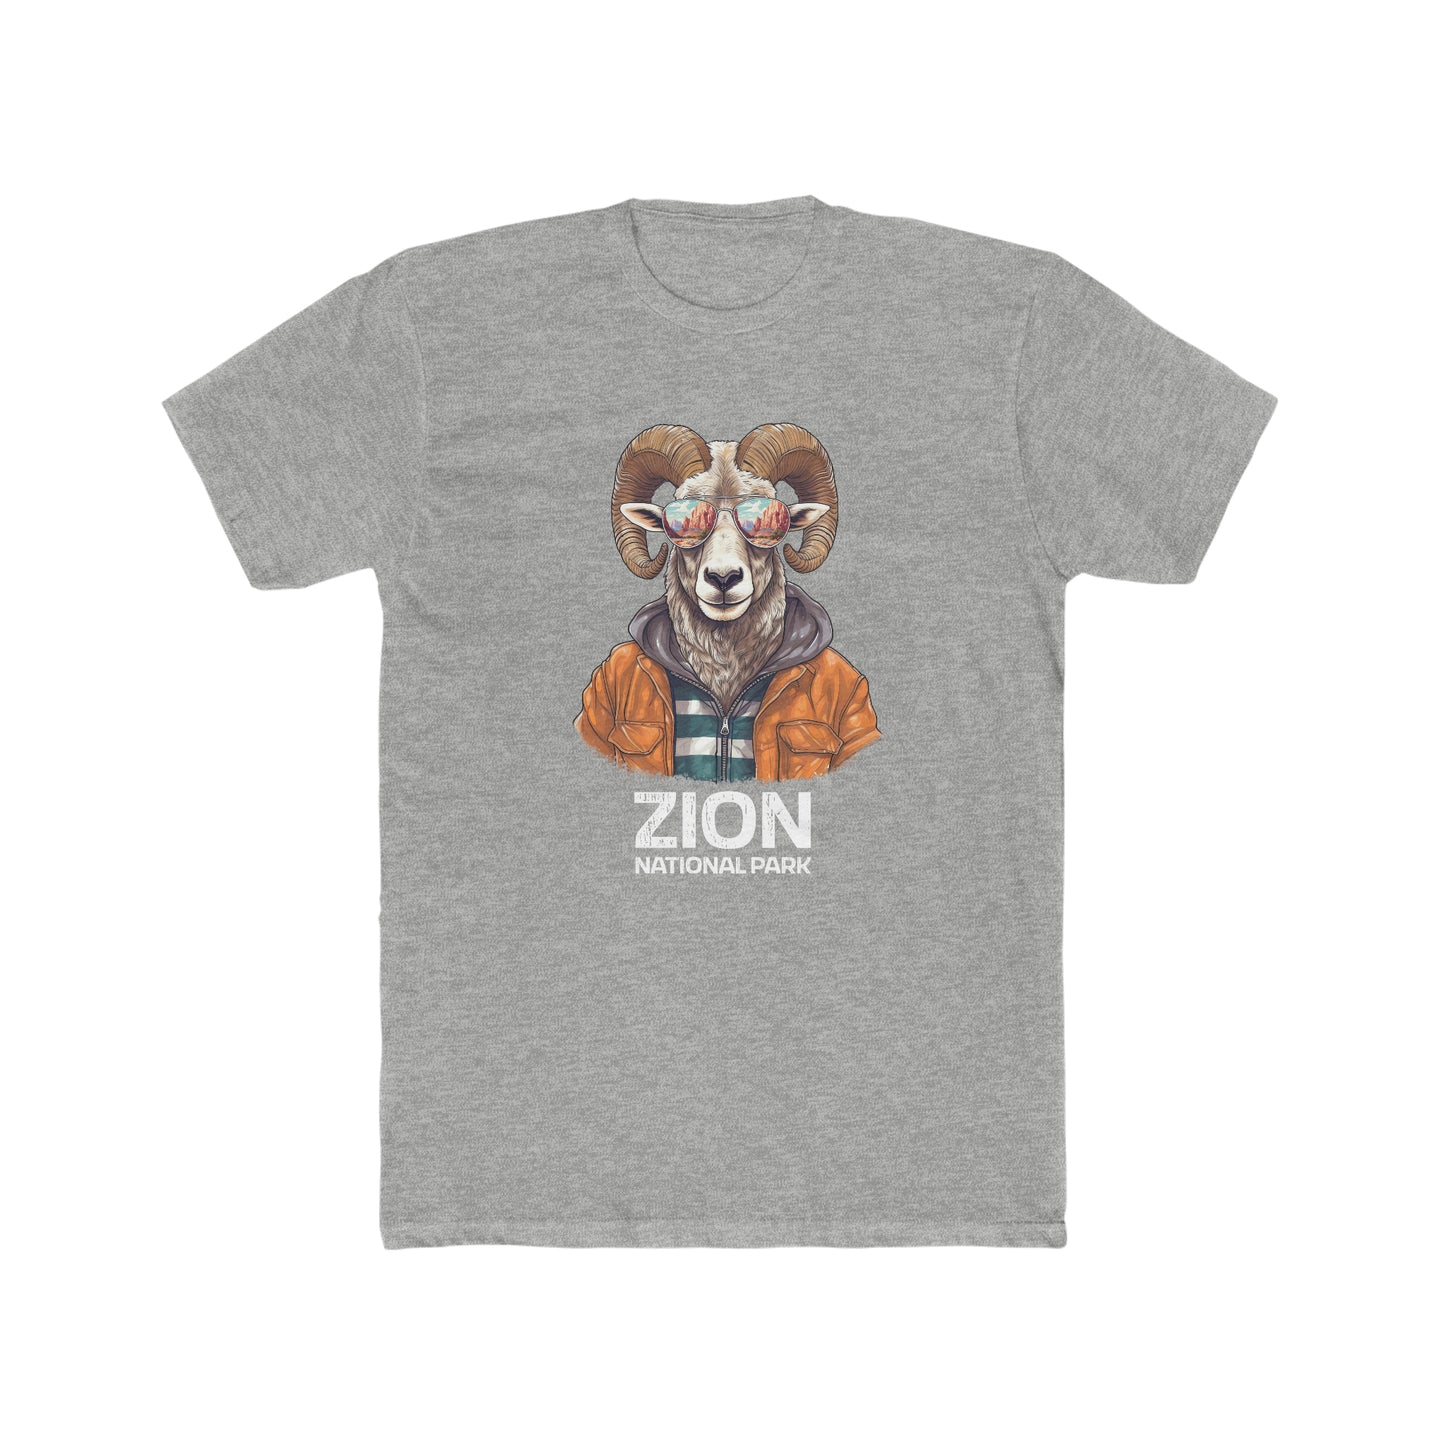 Zion National Park T-Shirt - Bighorn Sheep